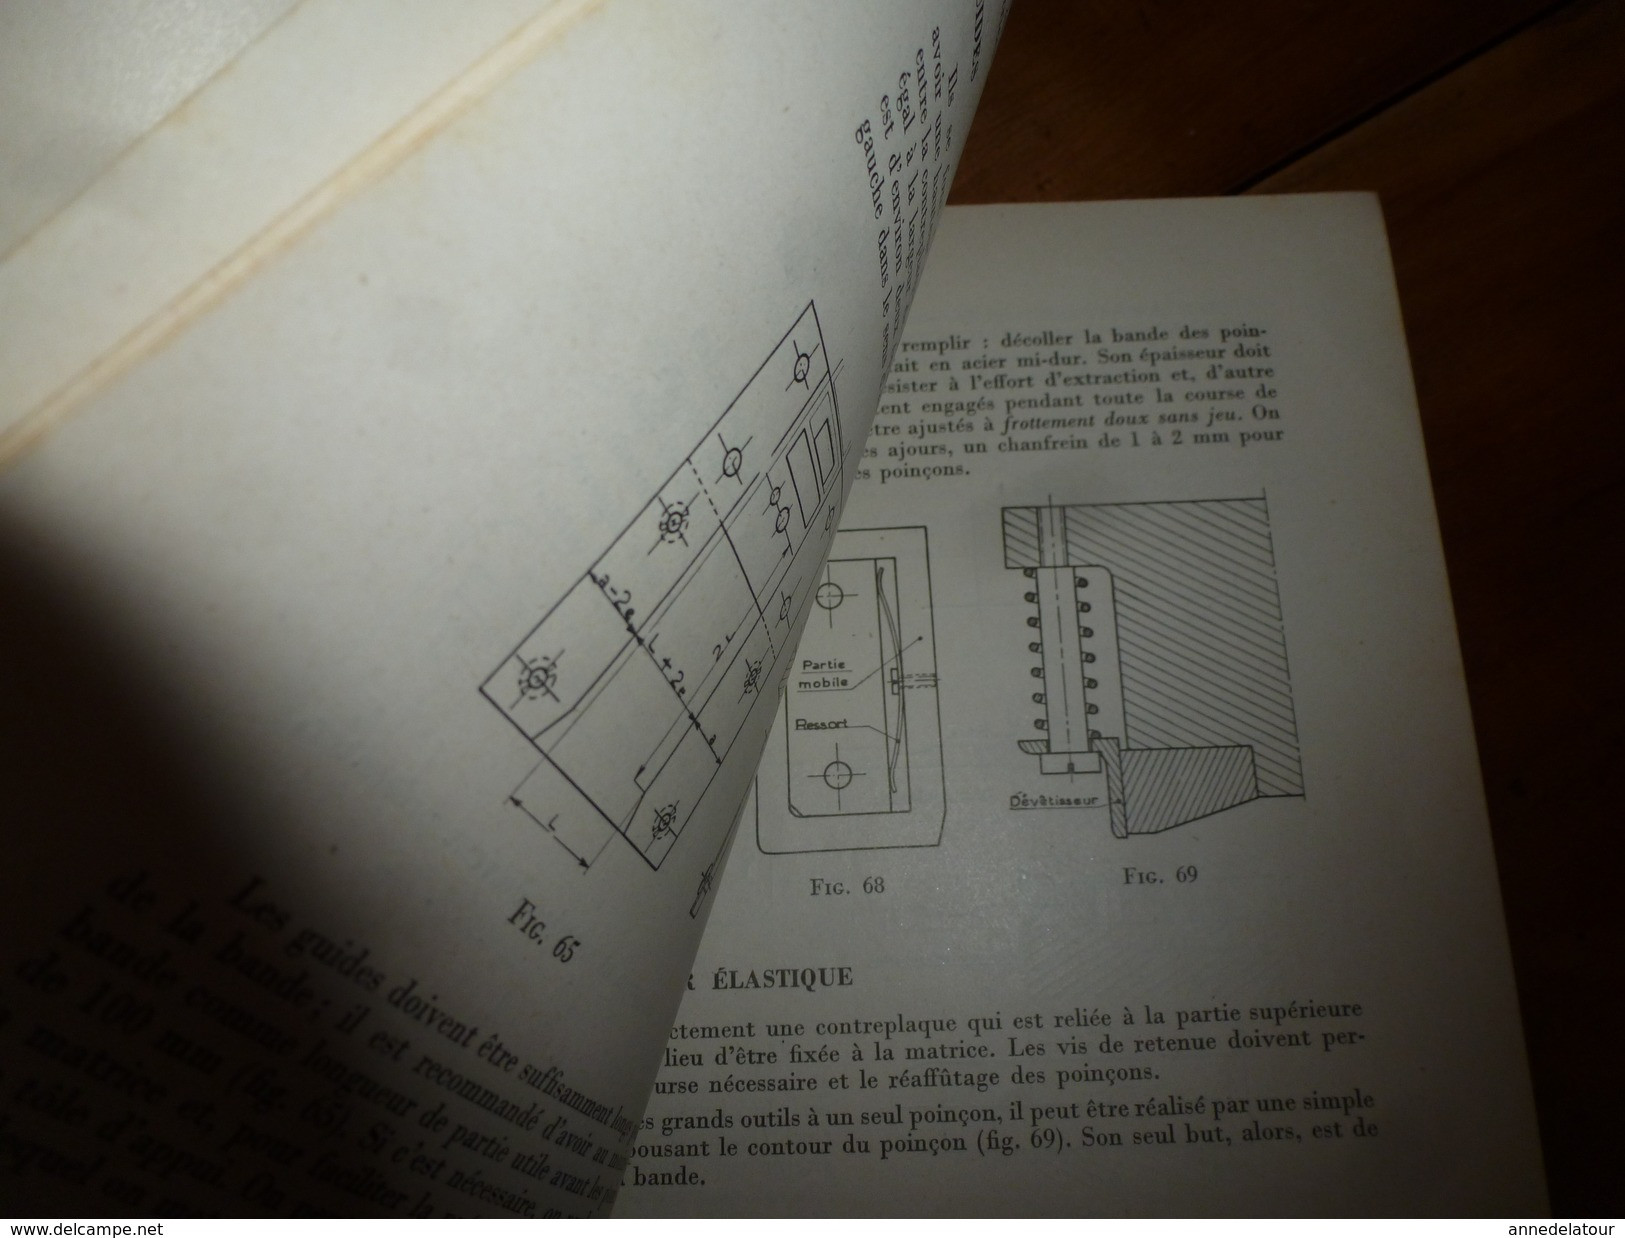 Rare livre pour la pratique (Découpage- Cambrage- Emboutissage ) par L. Girardot  "L'OUTILLEUR"